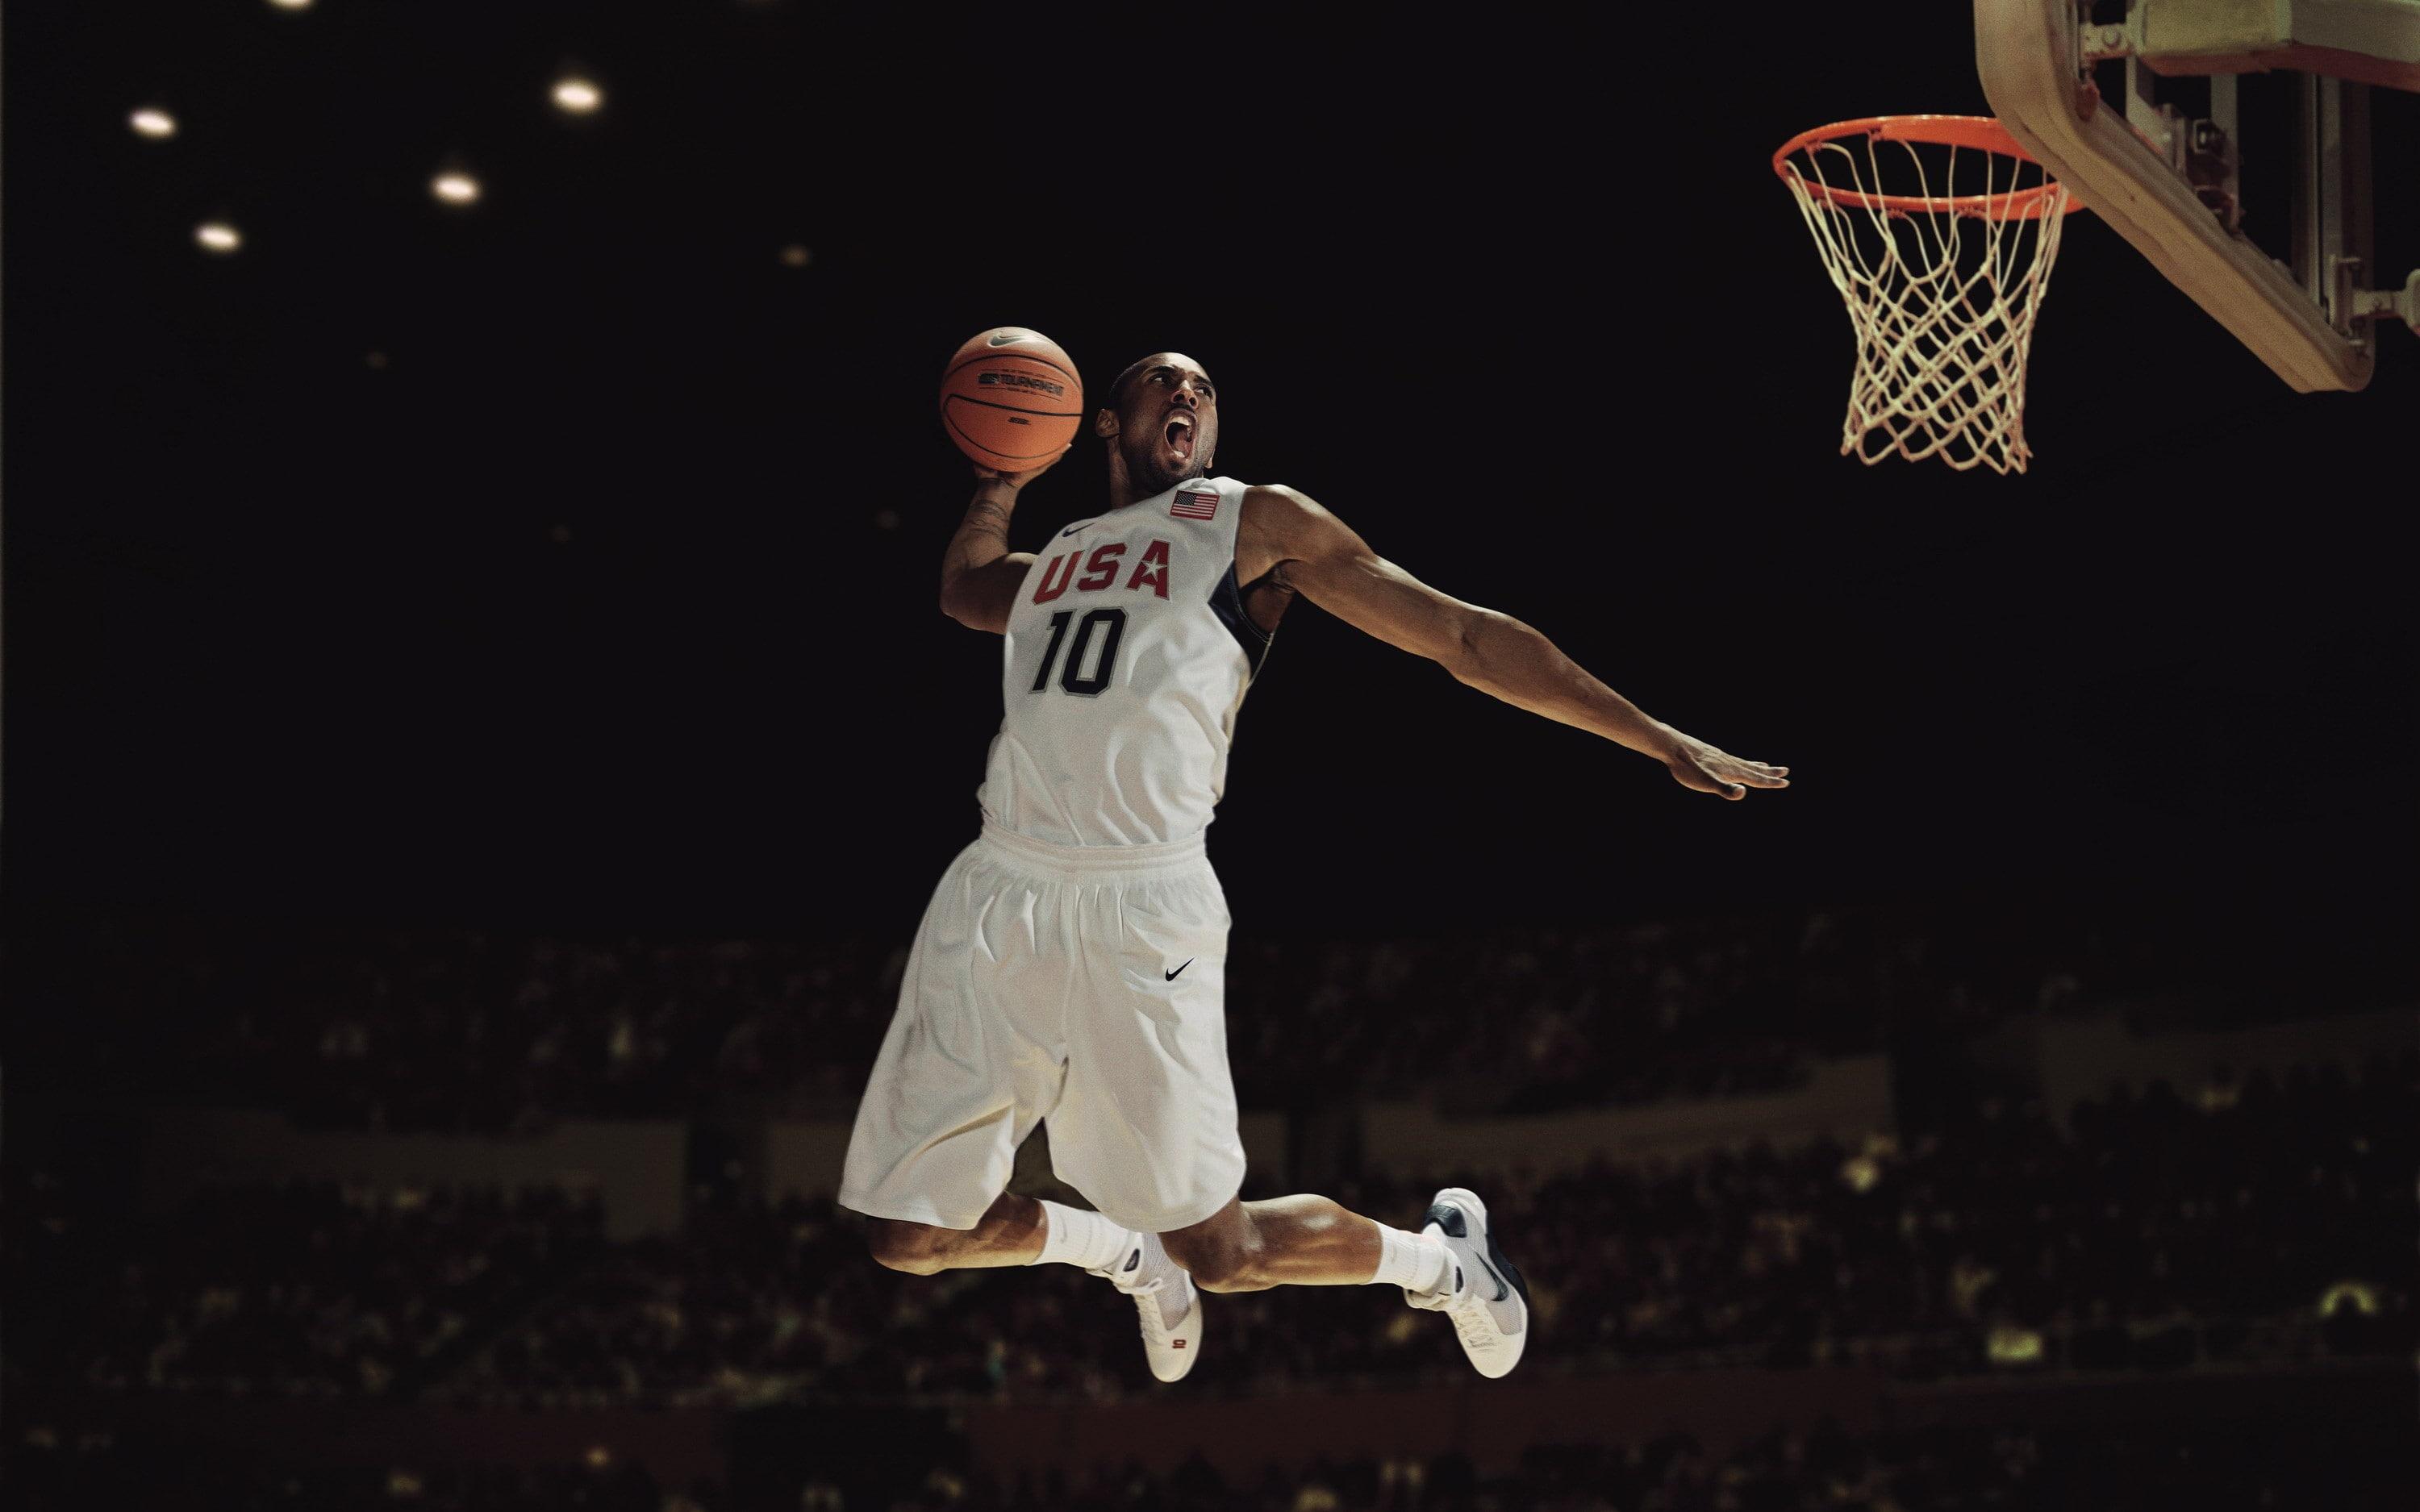 Kobe Bryant player, Kobe Bryant, player, Basketball, USA